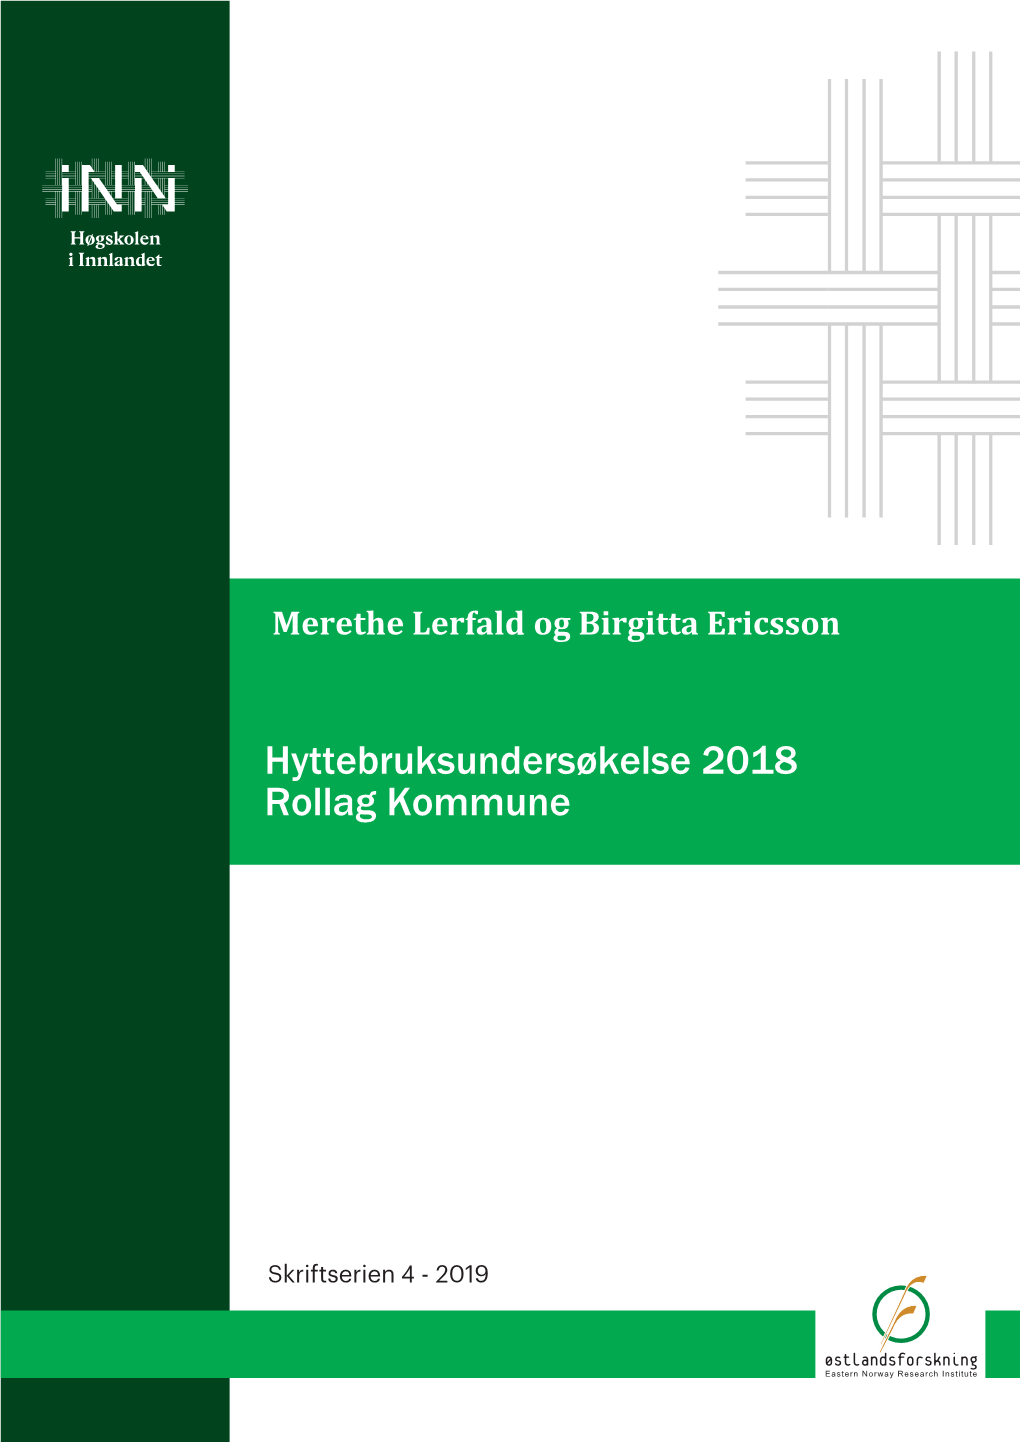 Hyttebruksundersøkelse 2018 Rollag Kommune